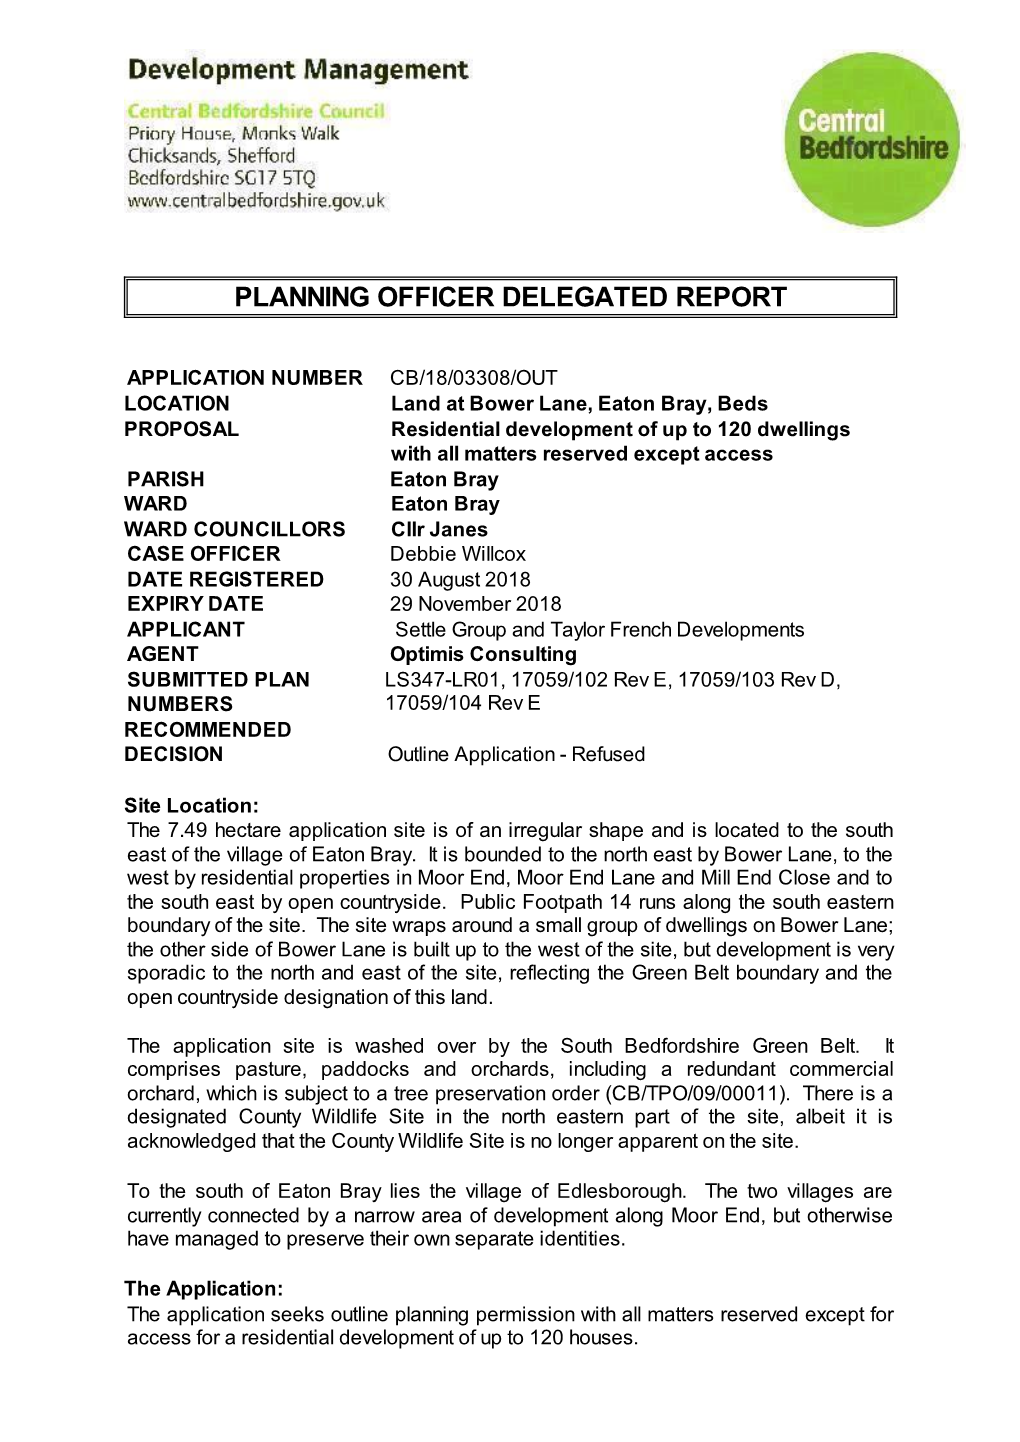 Planning Officer Delegated Report